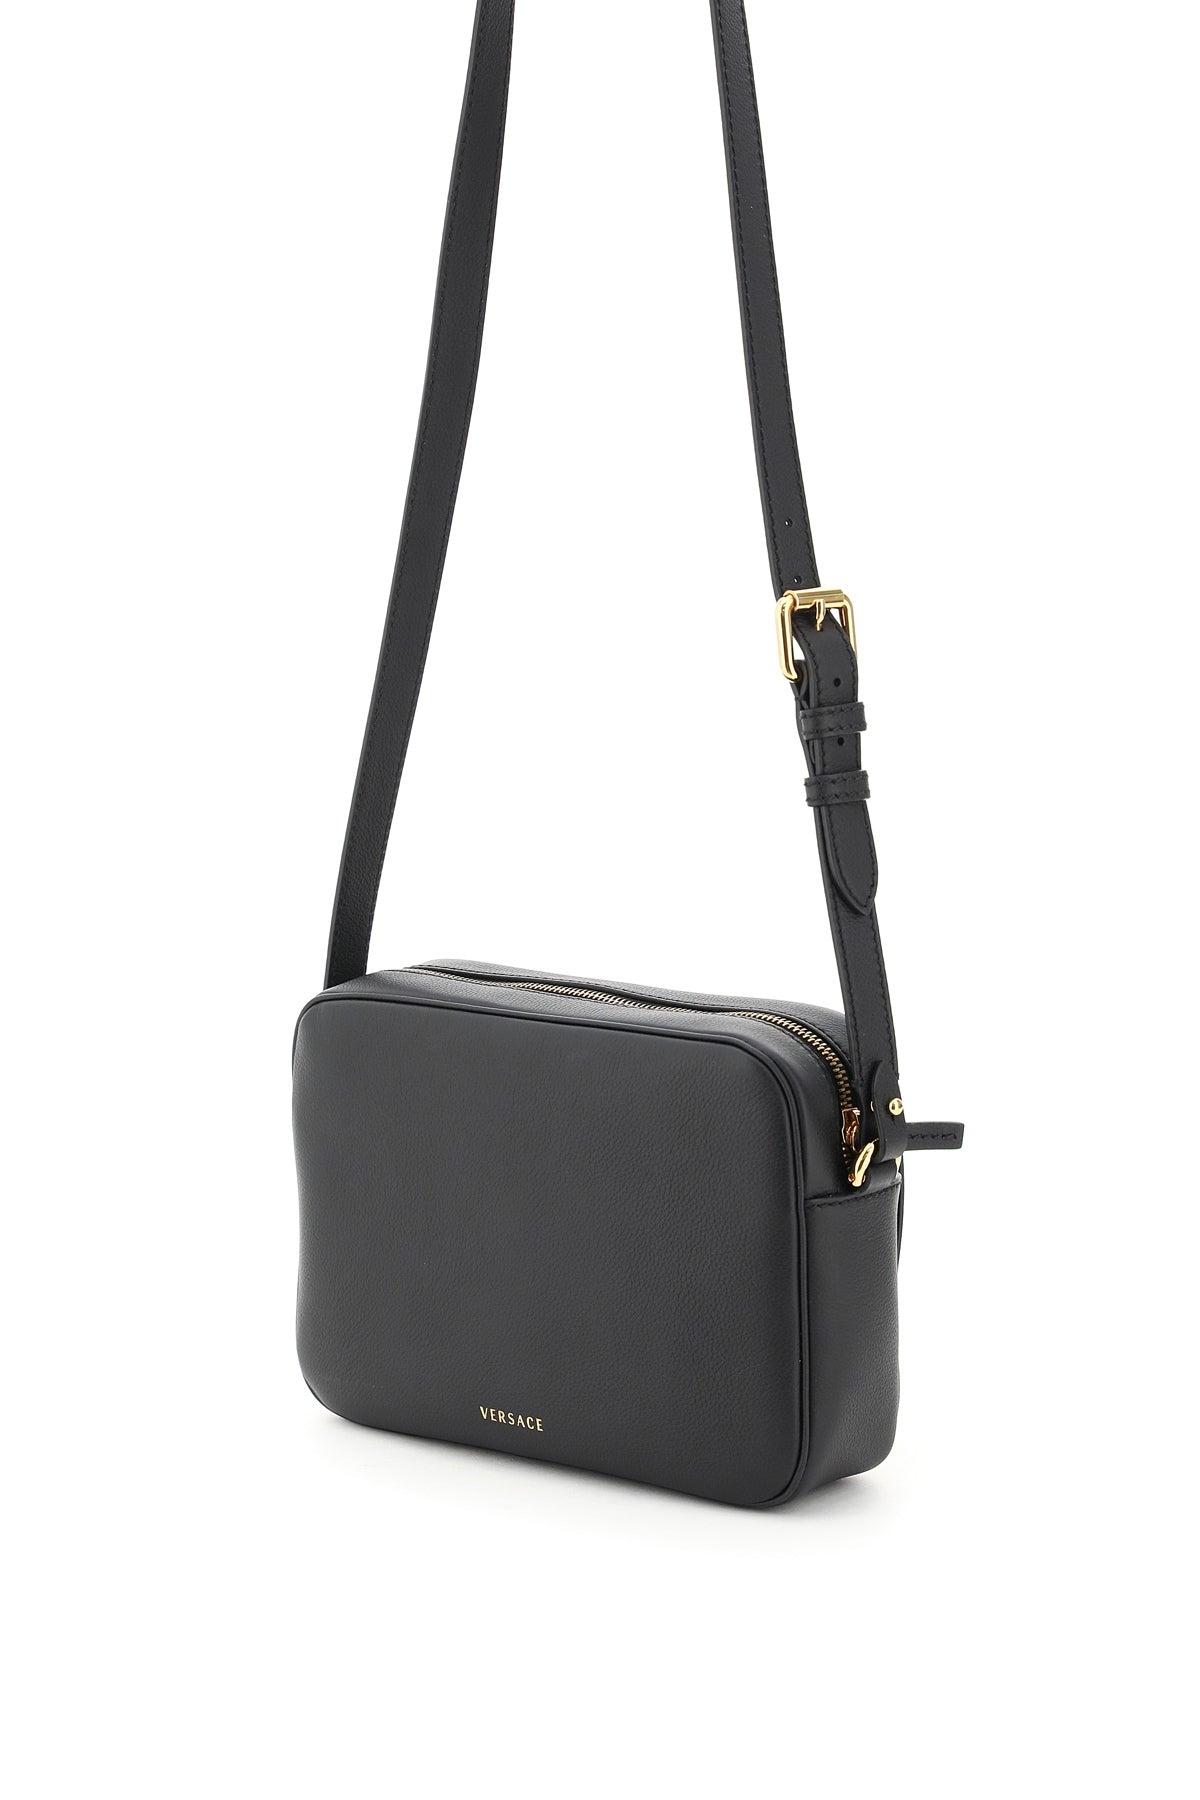 Versace Leather Camera Bag La Medusa in Black Gold (Black) - Lyst